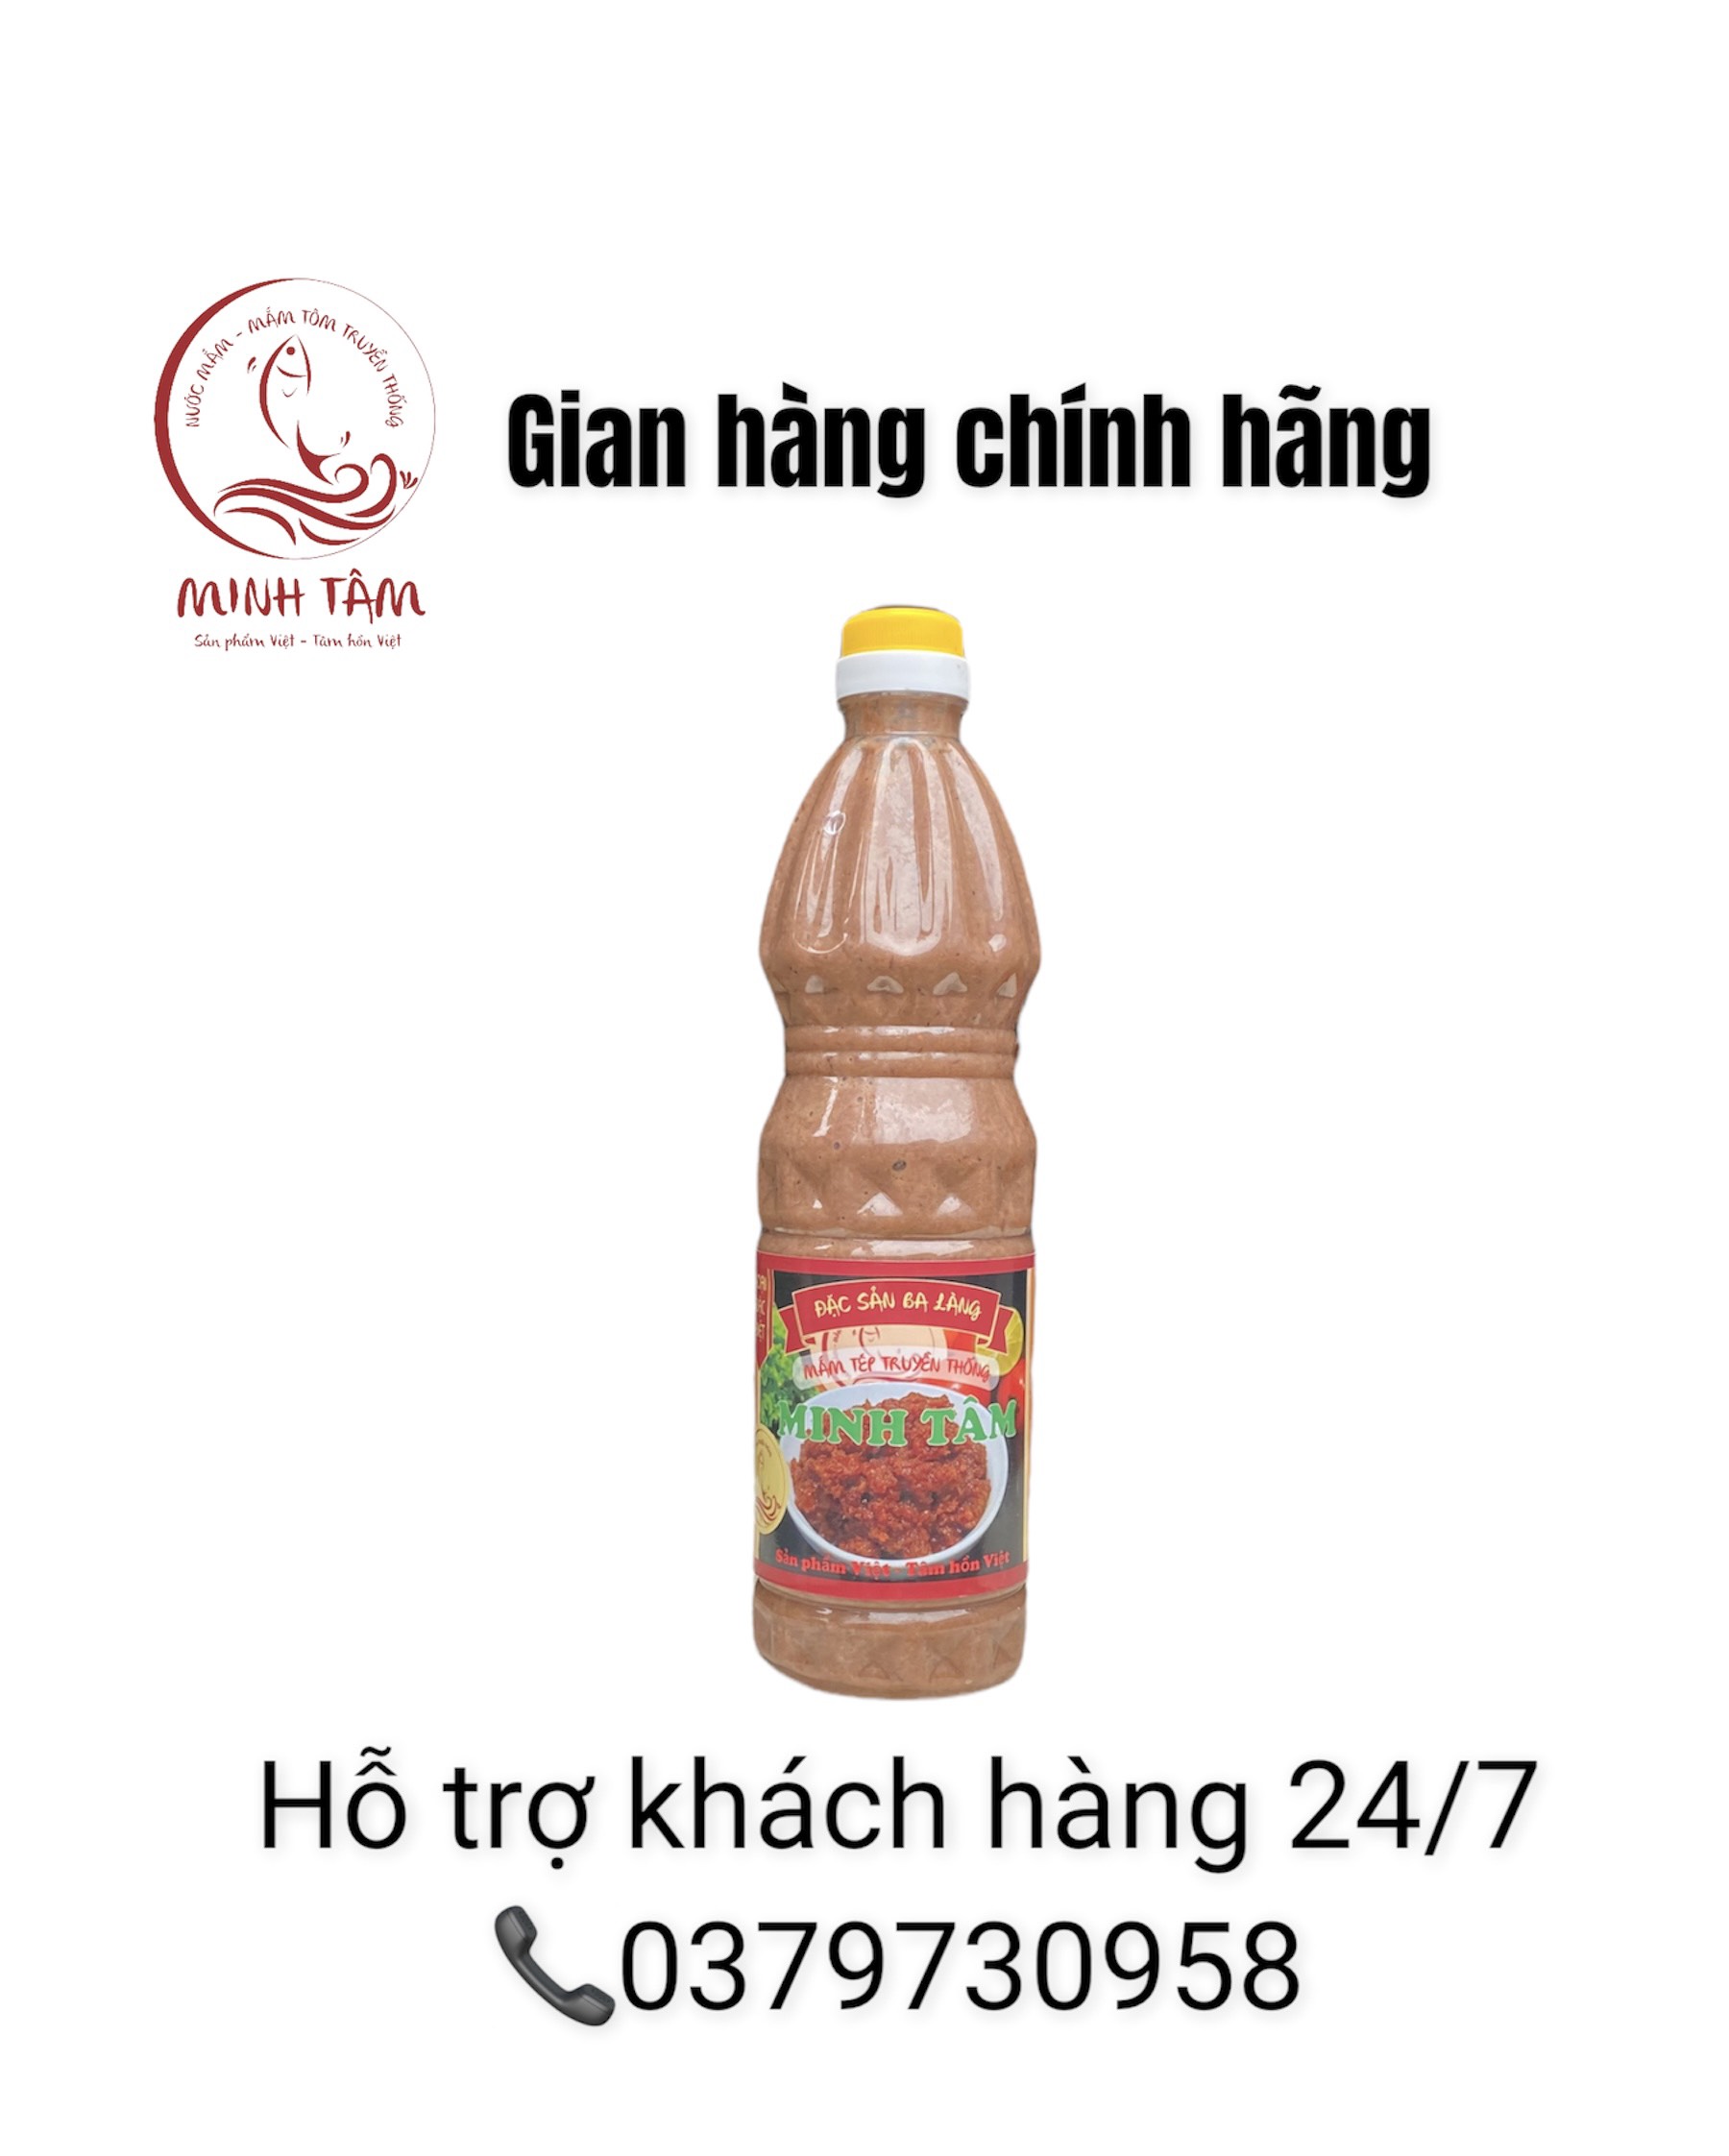 Mắm tép chưng thịt Minh Tâm - đặc sản Ba Làng Thanh Hoá - Loại 1, chai 1Kg